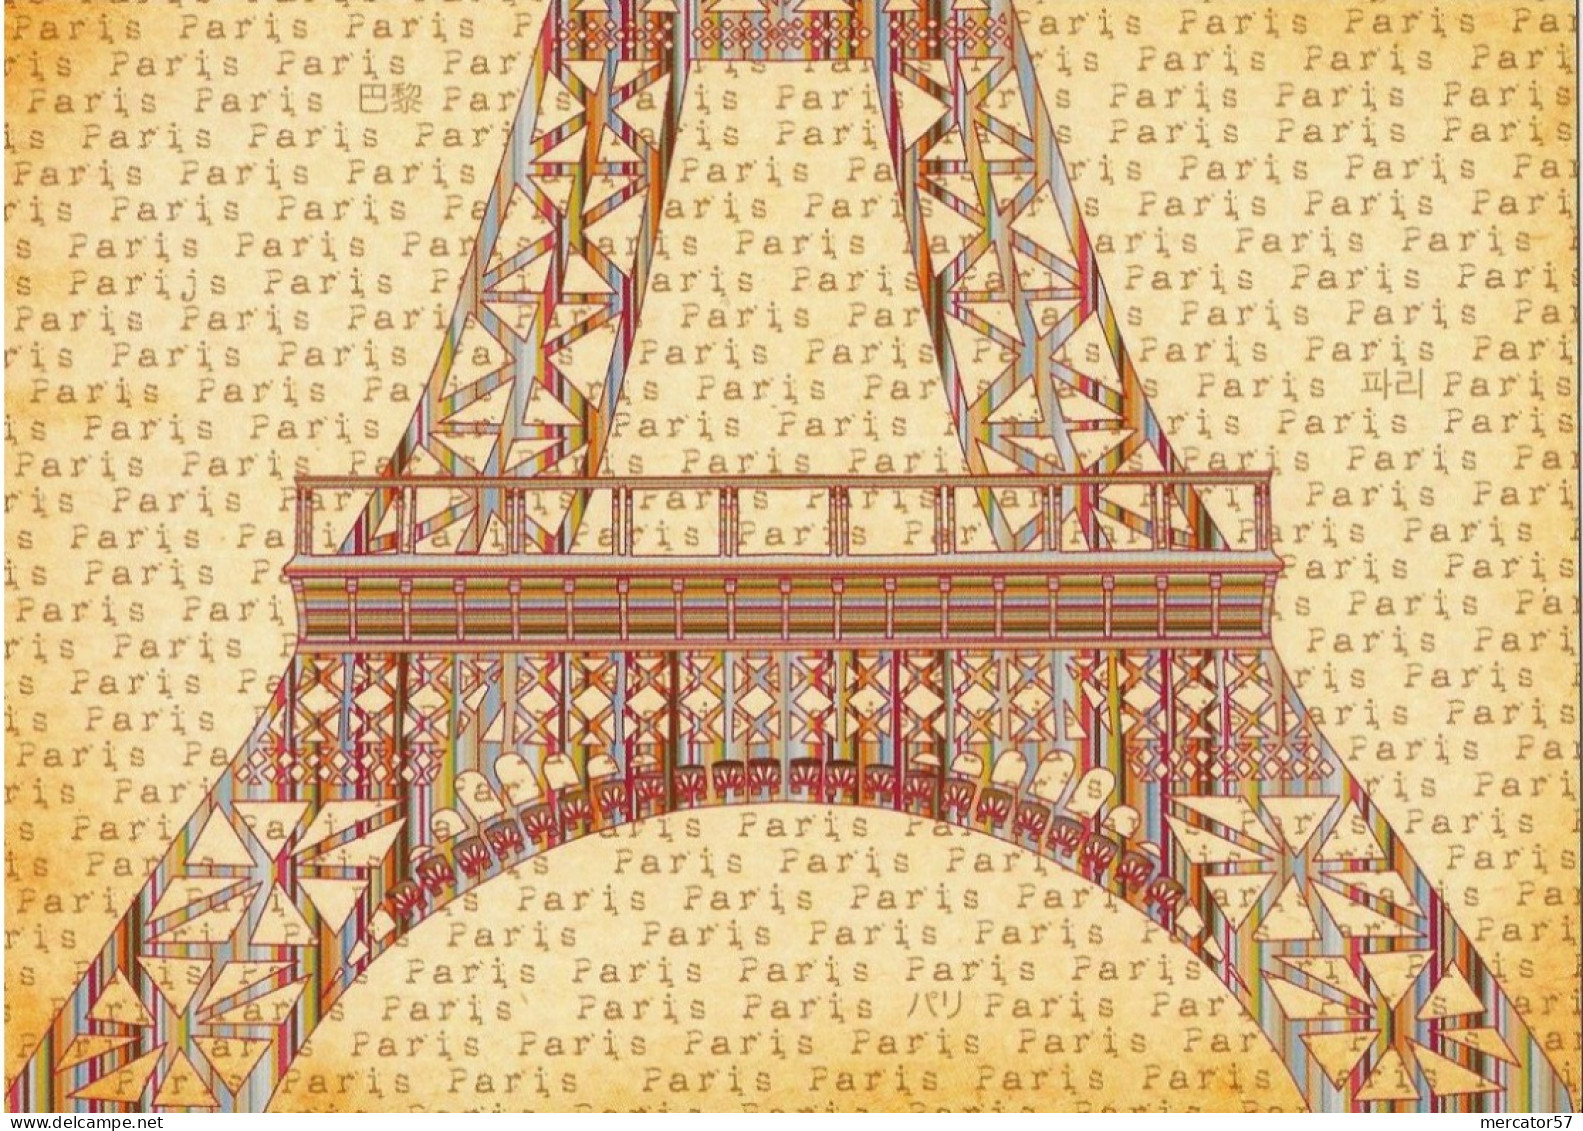 CPM PARIS Tour Eiffel - Hedendaags (vanaf 1950)